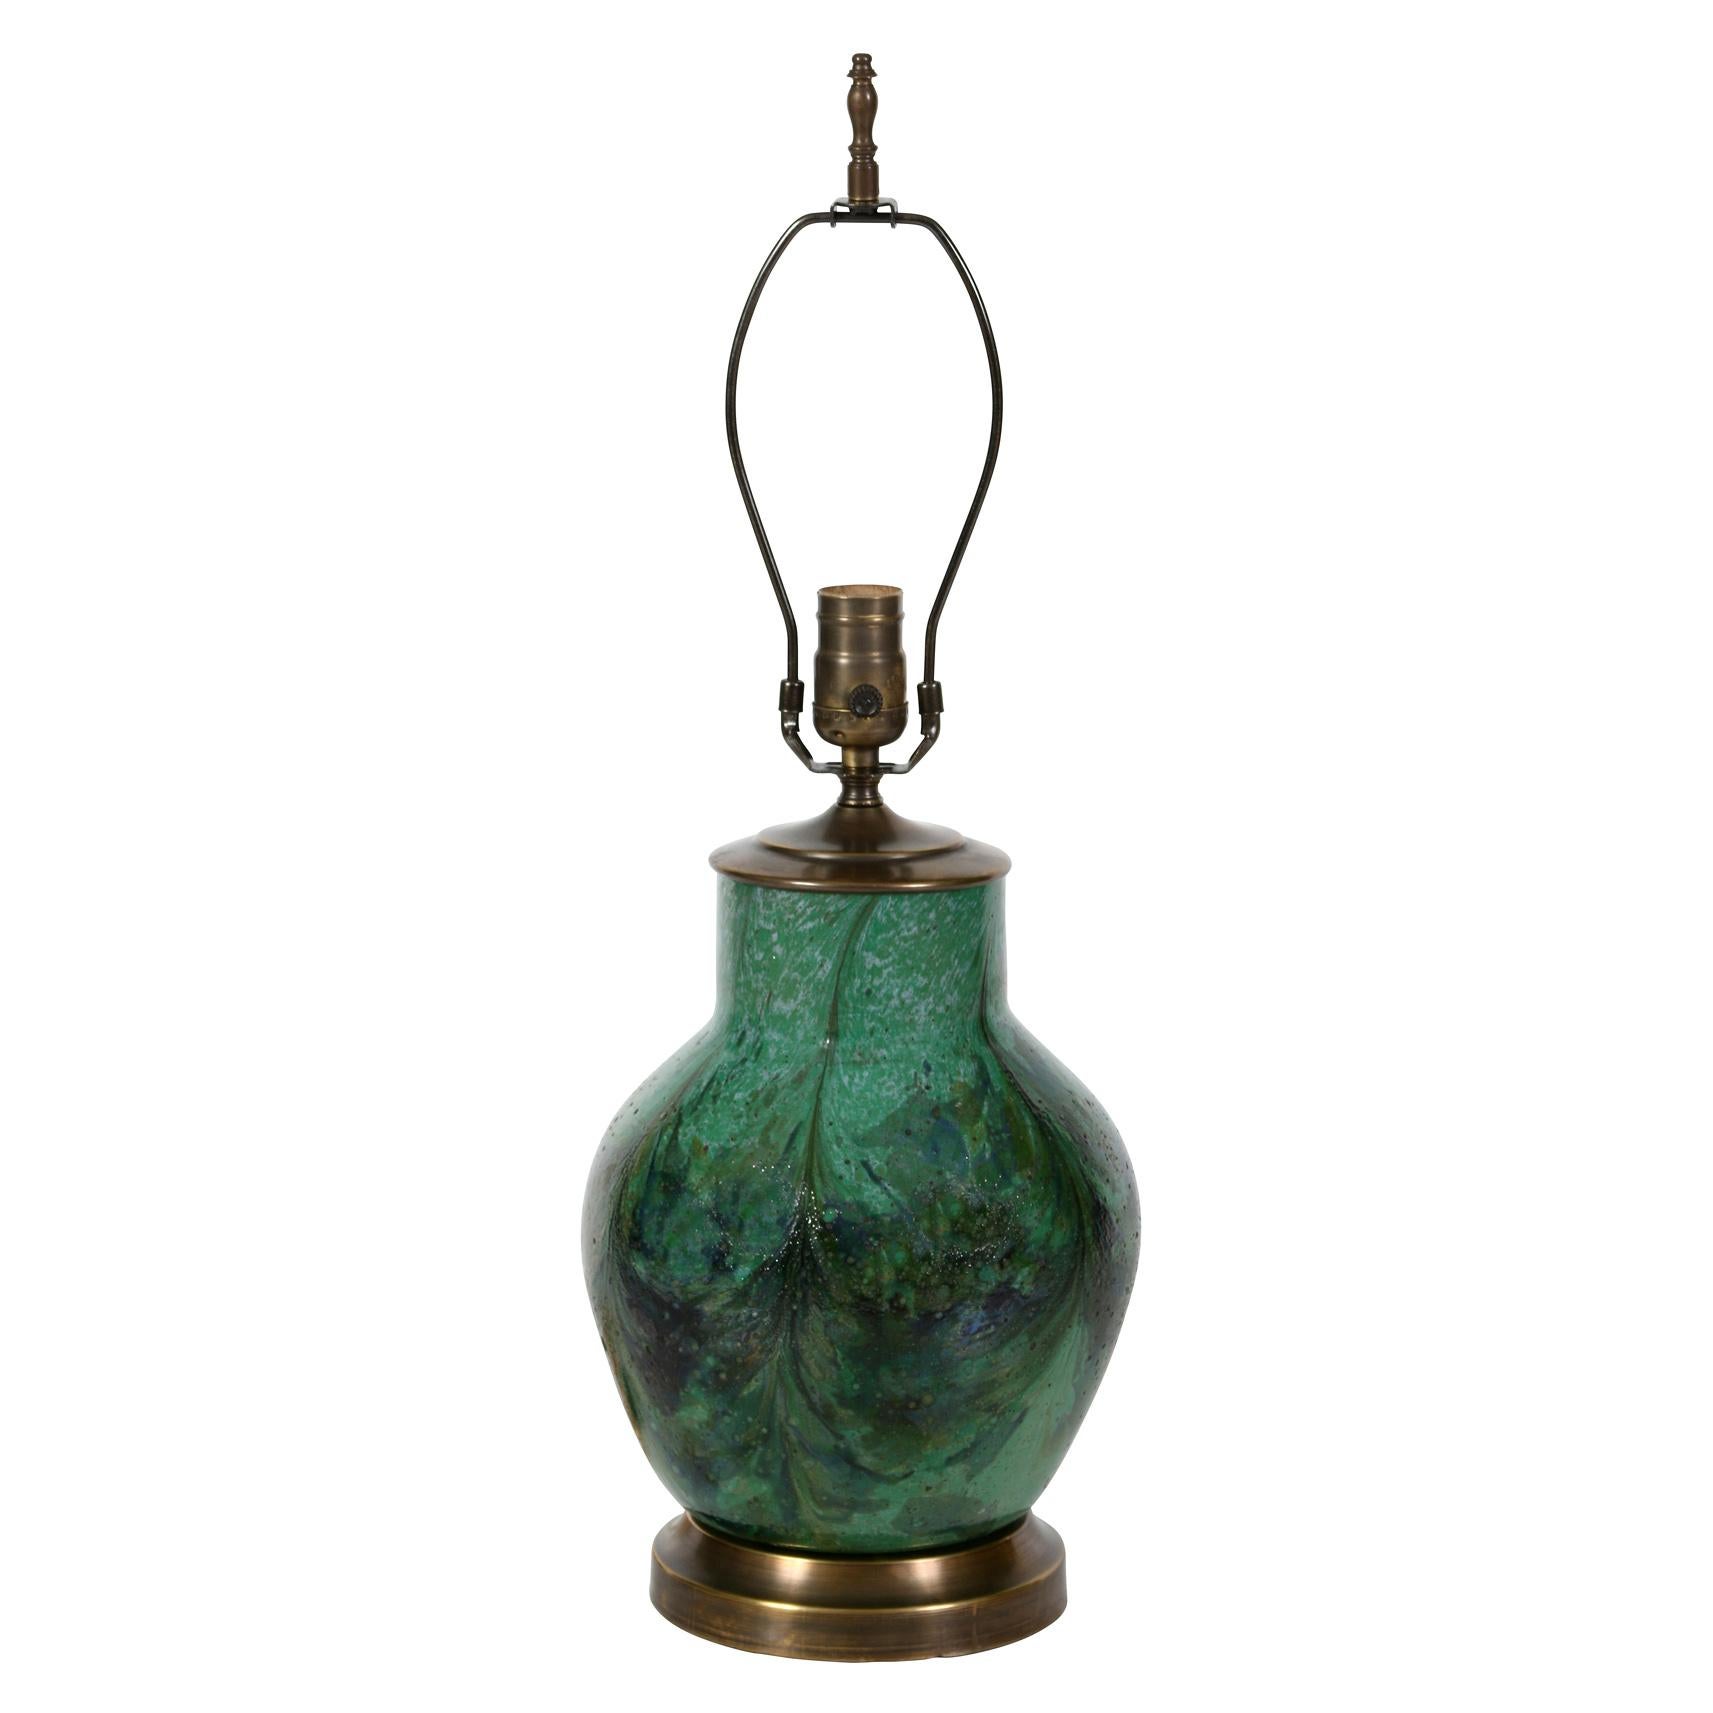 Cette lampe en céramique verte de style asiatique se distingue par sa belle glaçure.  Dans différentes teintes de verts et de bleus, la glaçure a presque un effet marbré.  Montée sur une base en laiton, la lampe est dotée d'un abat-jour plissé en